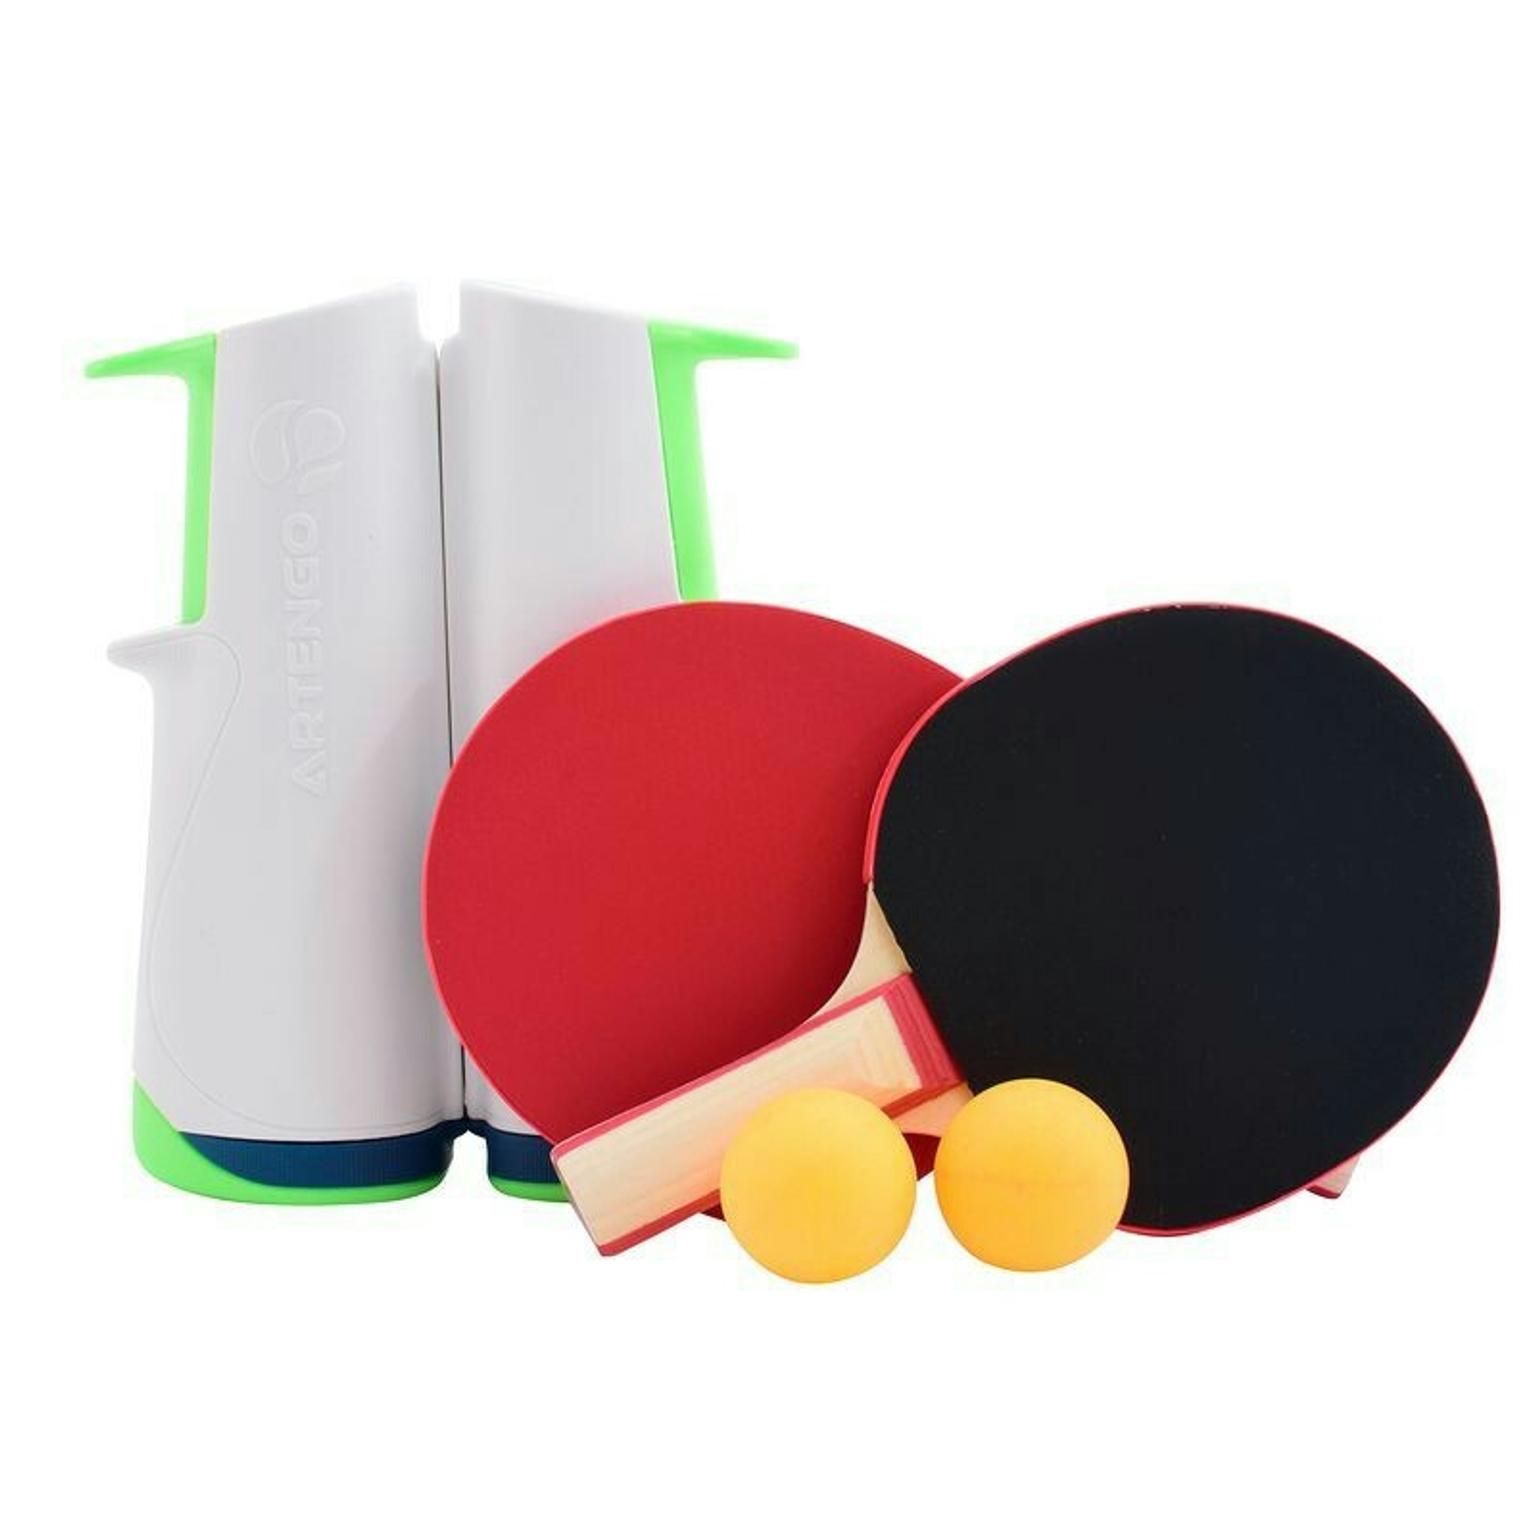 kit ping pong decathlon